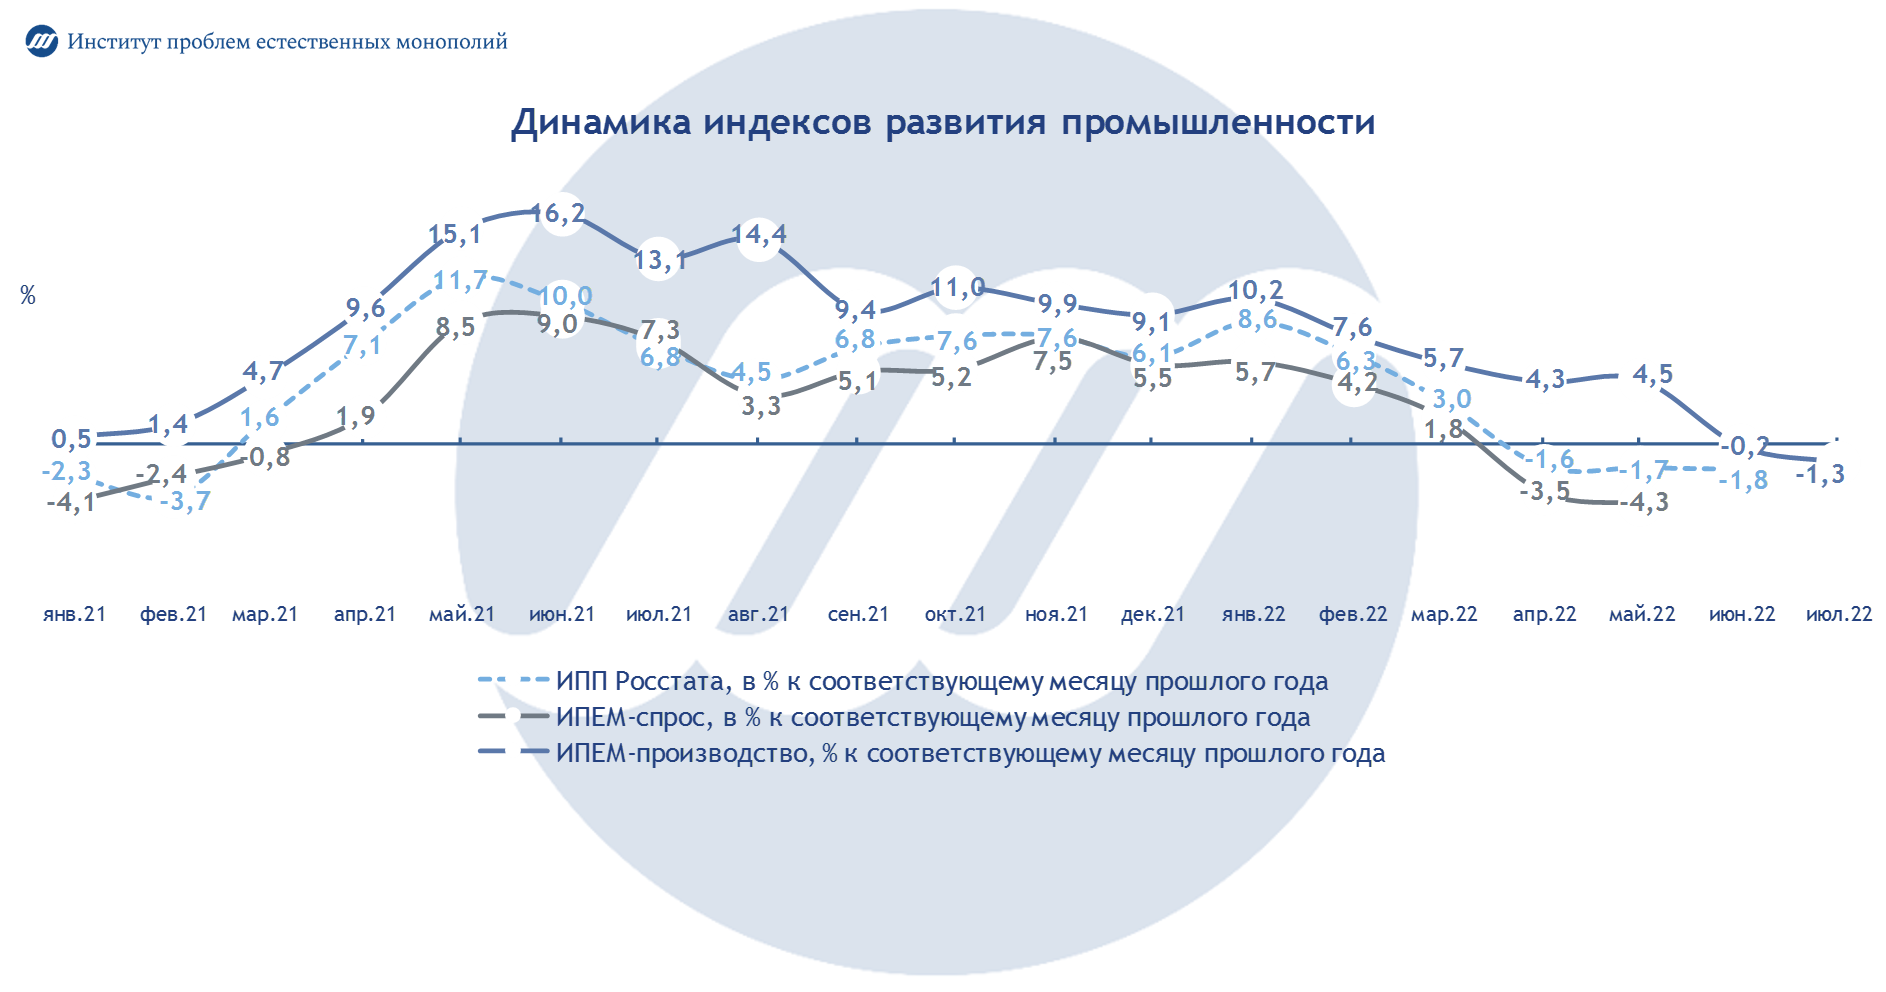 Промышленность России: итоги июля 2022 года